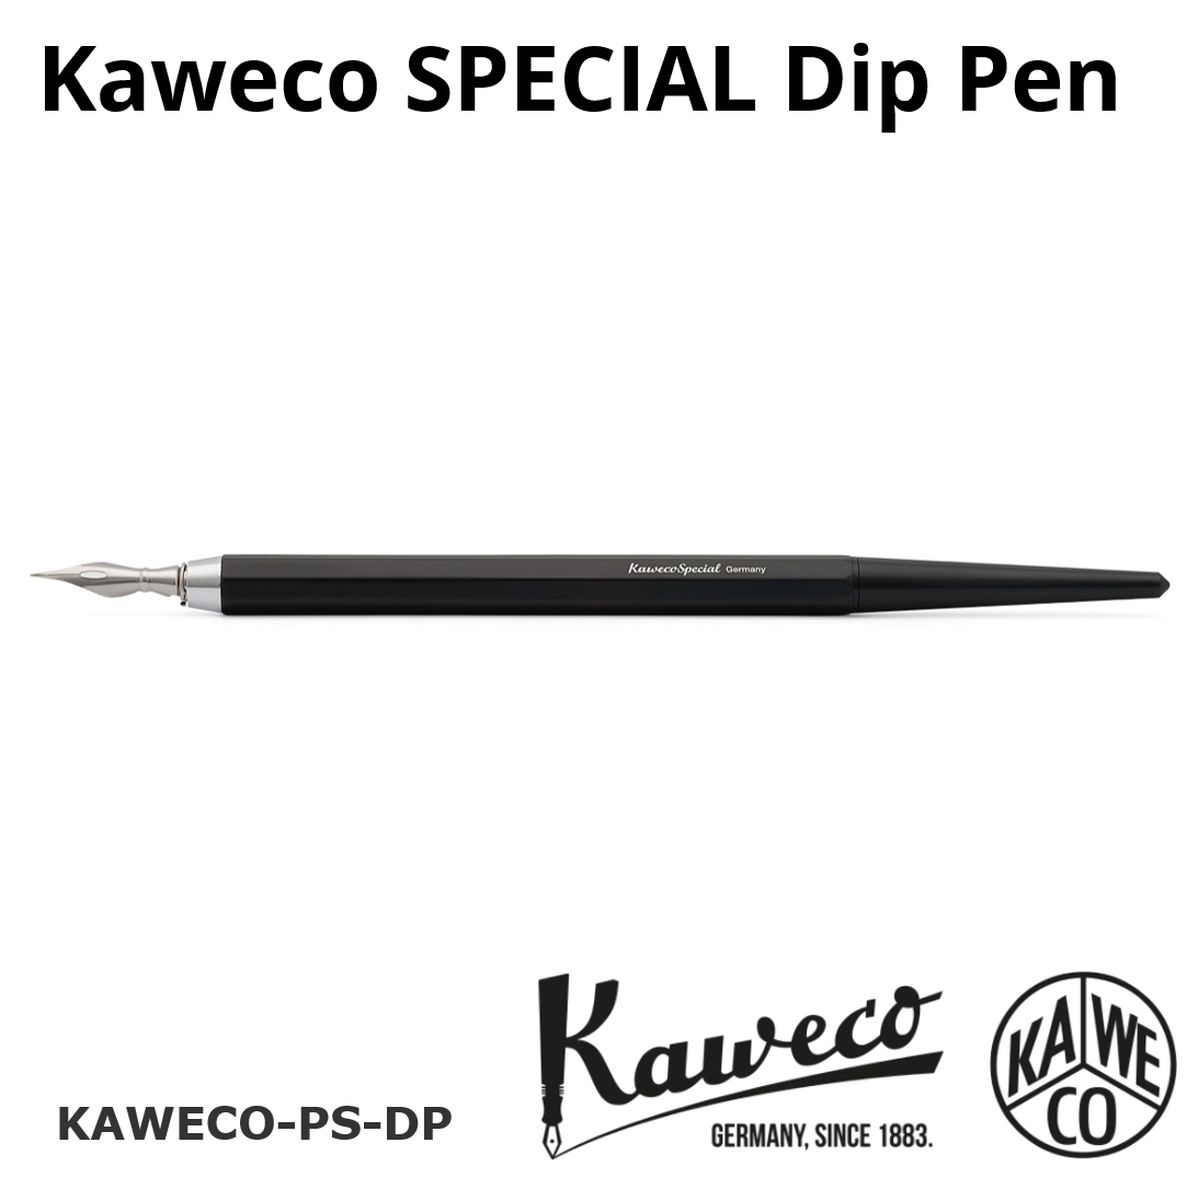 カヴェコ [正規輸入品/保証書付] 万年筆 カヴェコ スペシャル ディップペン KAWECO PS-DP